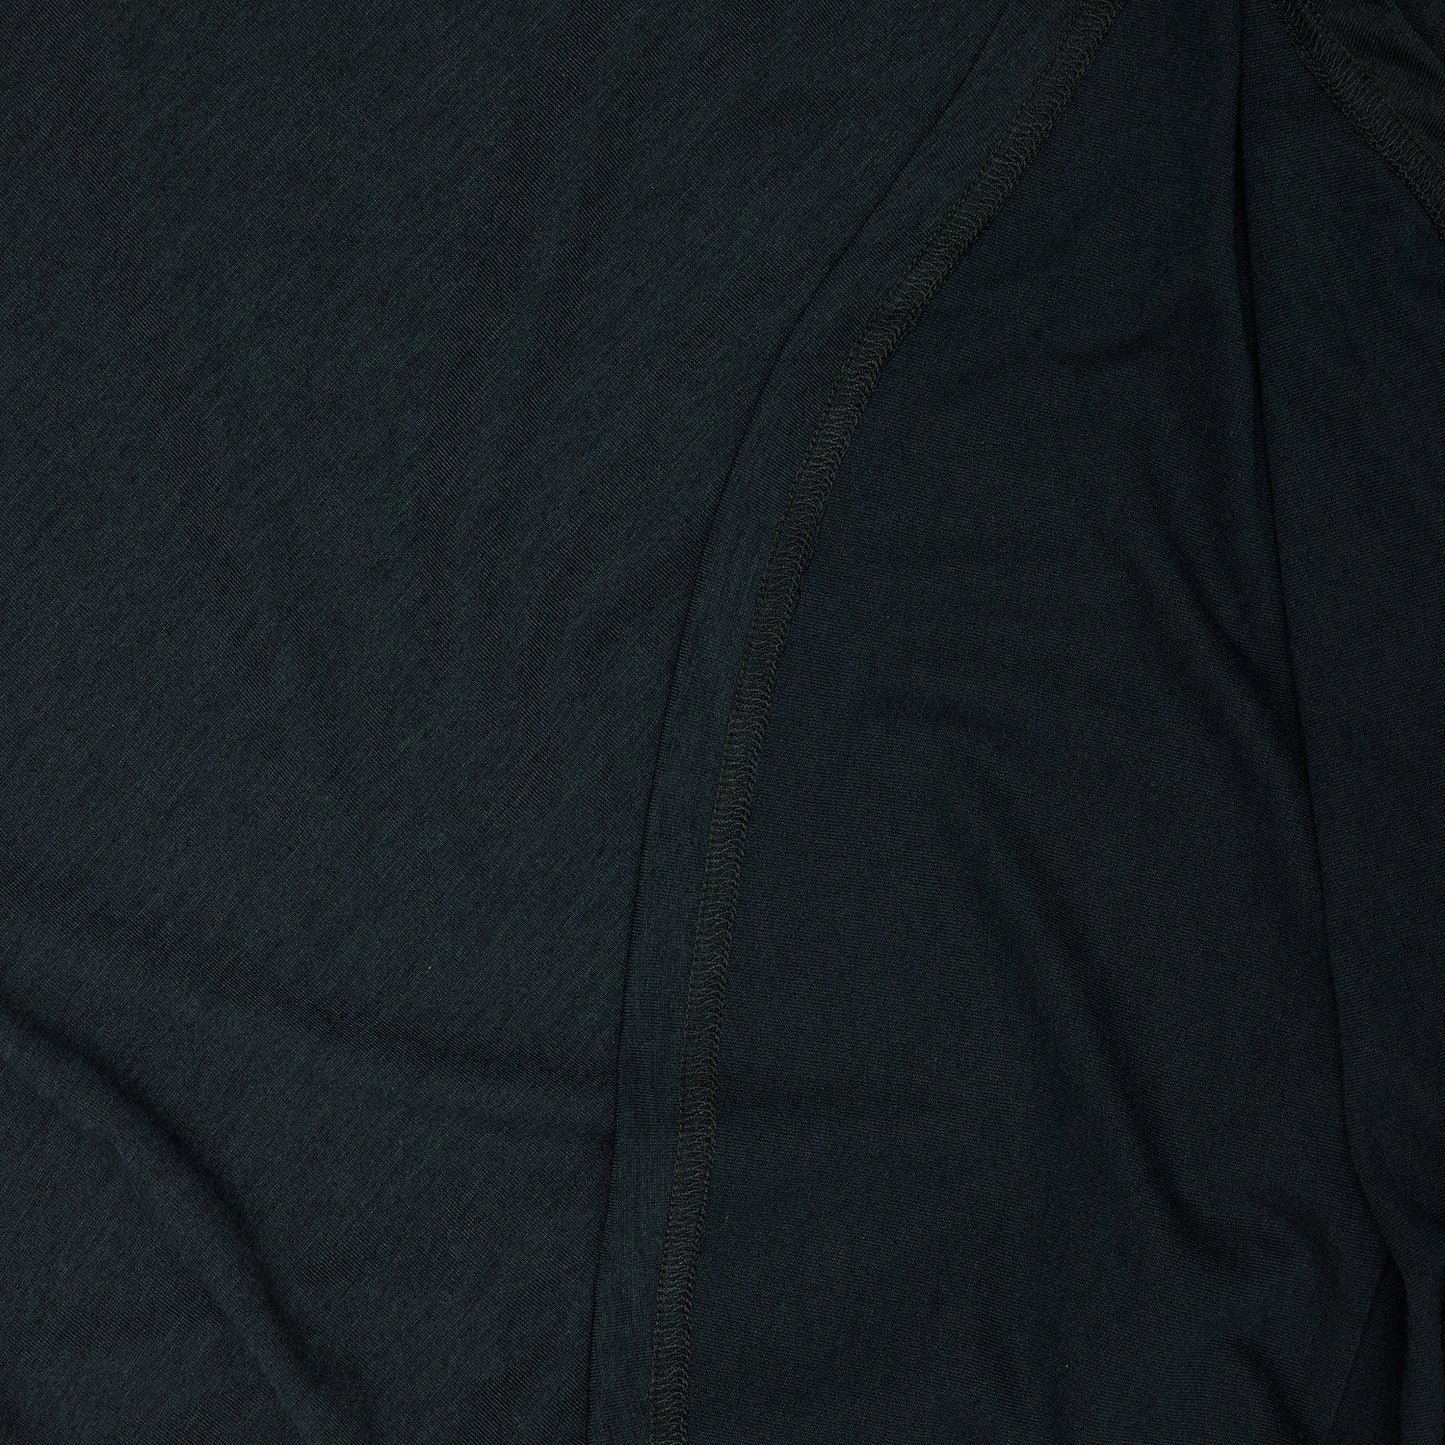 モーションTシャツ XWRSS51c6001 W Clean Motion T-shirt - Grey [レディーズ]